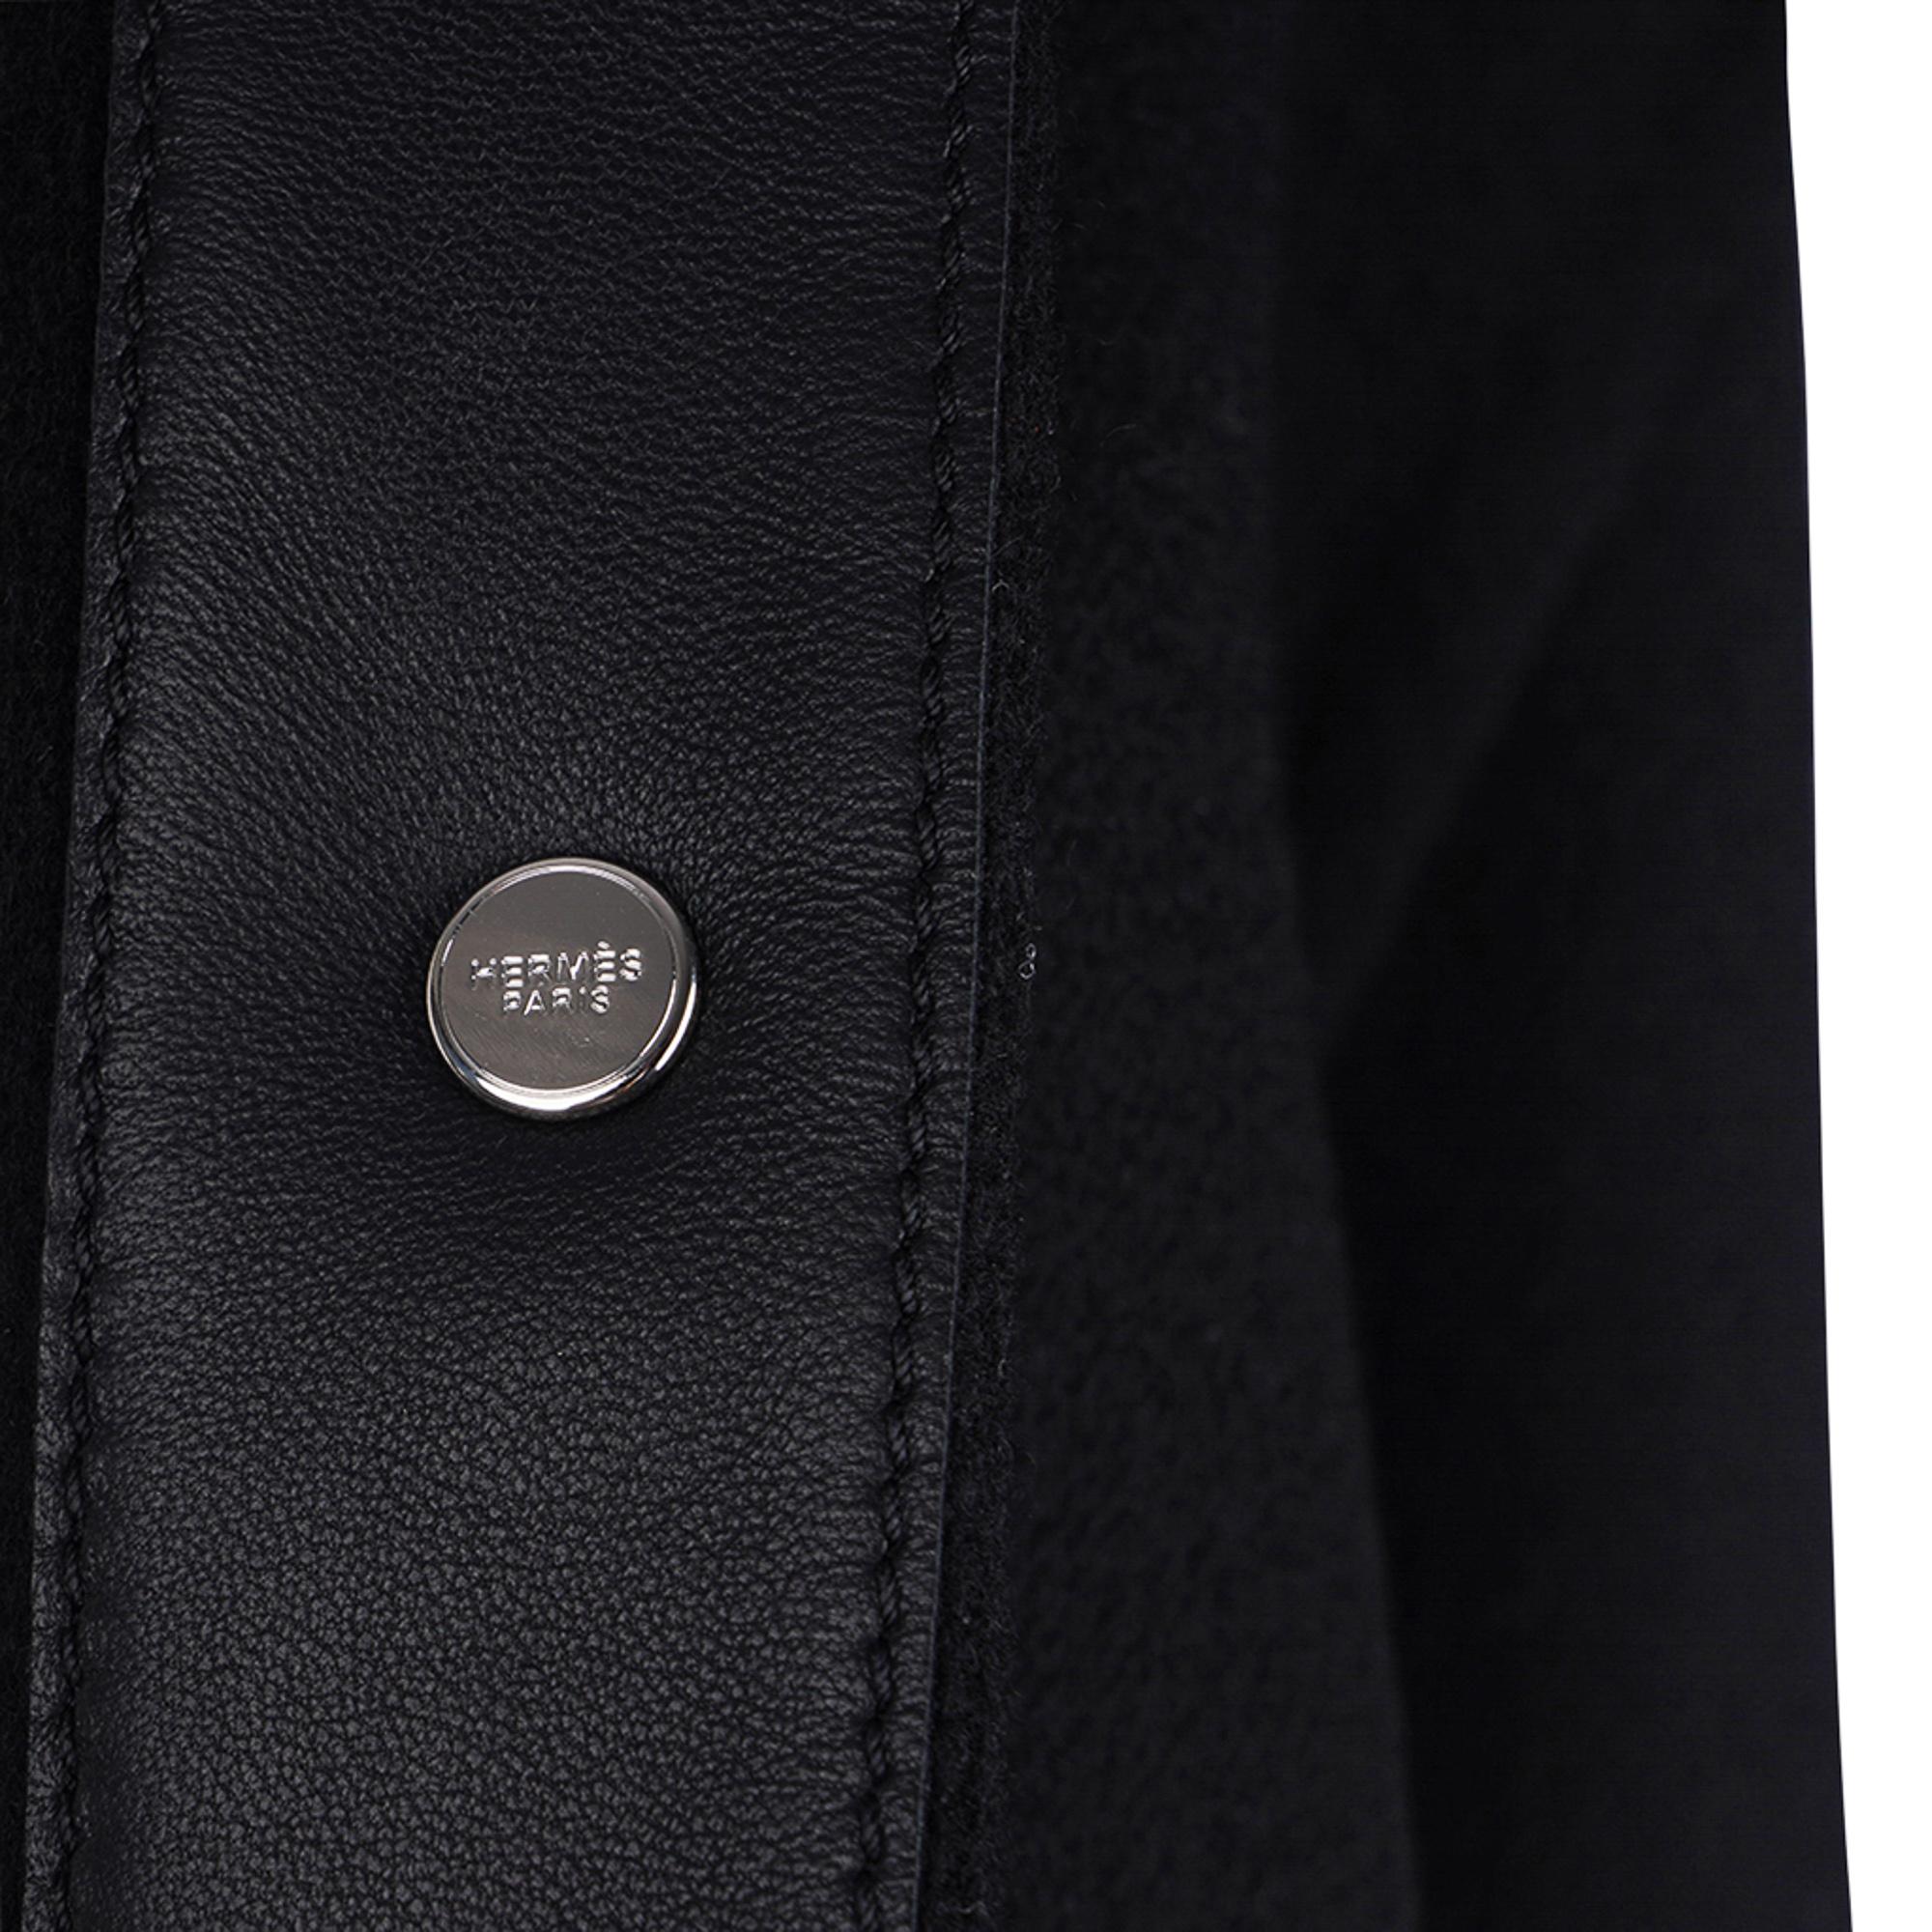 Hermes Black Cashmere Jacket Palladium Medor Snaps 40 / 6 For Sale 4